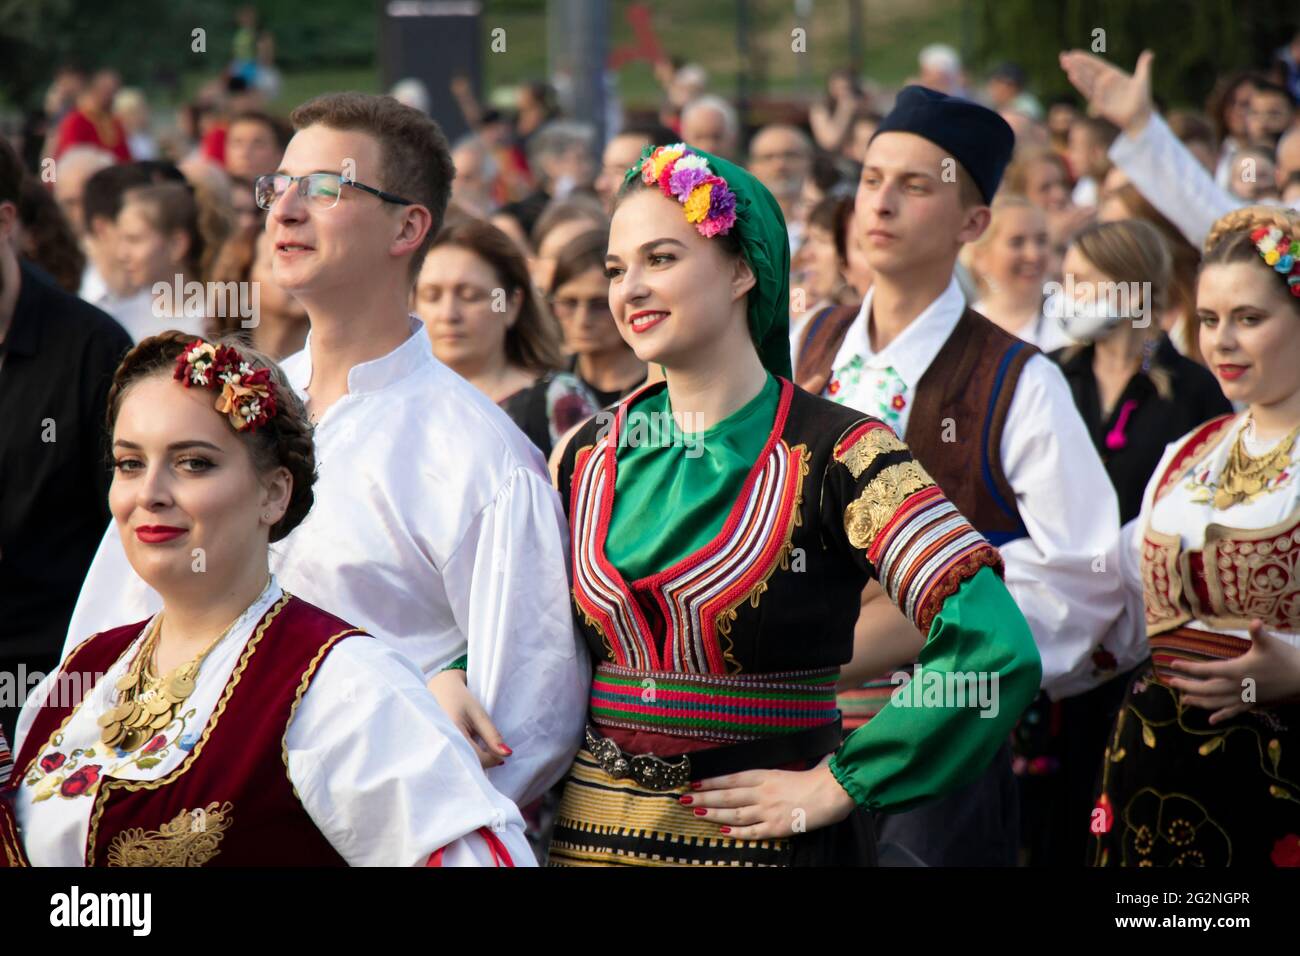 Belgrad, Serbien - 10. Juni 2021: Junge Volkstänzer in traditionellen Kostümen nehmen an einer religiösen Prozession Teil, um die Belgrader zu feiern Stockfoto